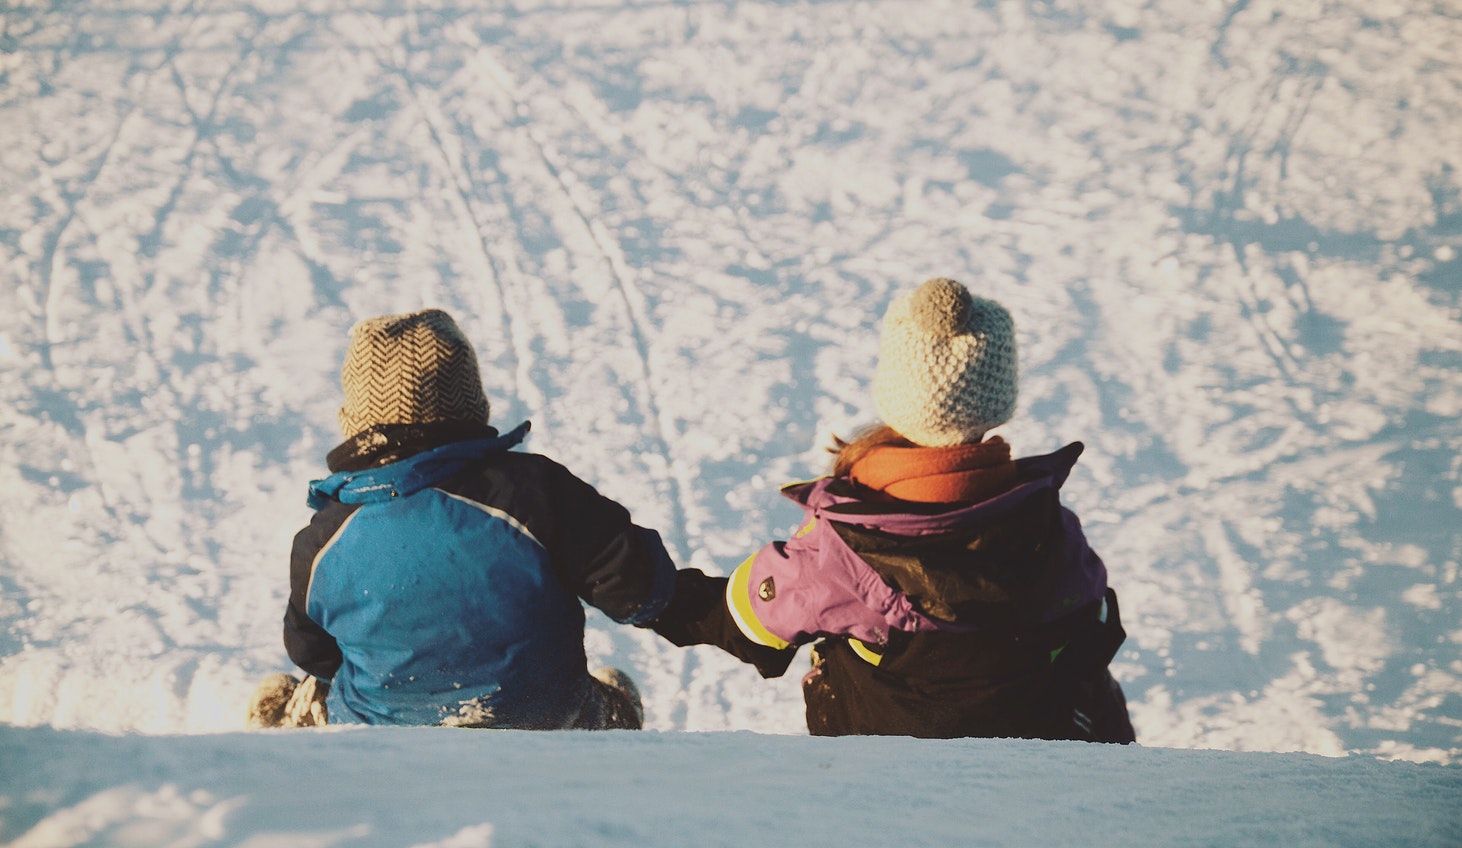 viajar com crianças foto na neve